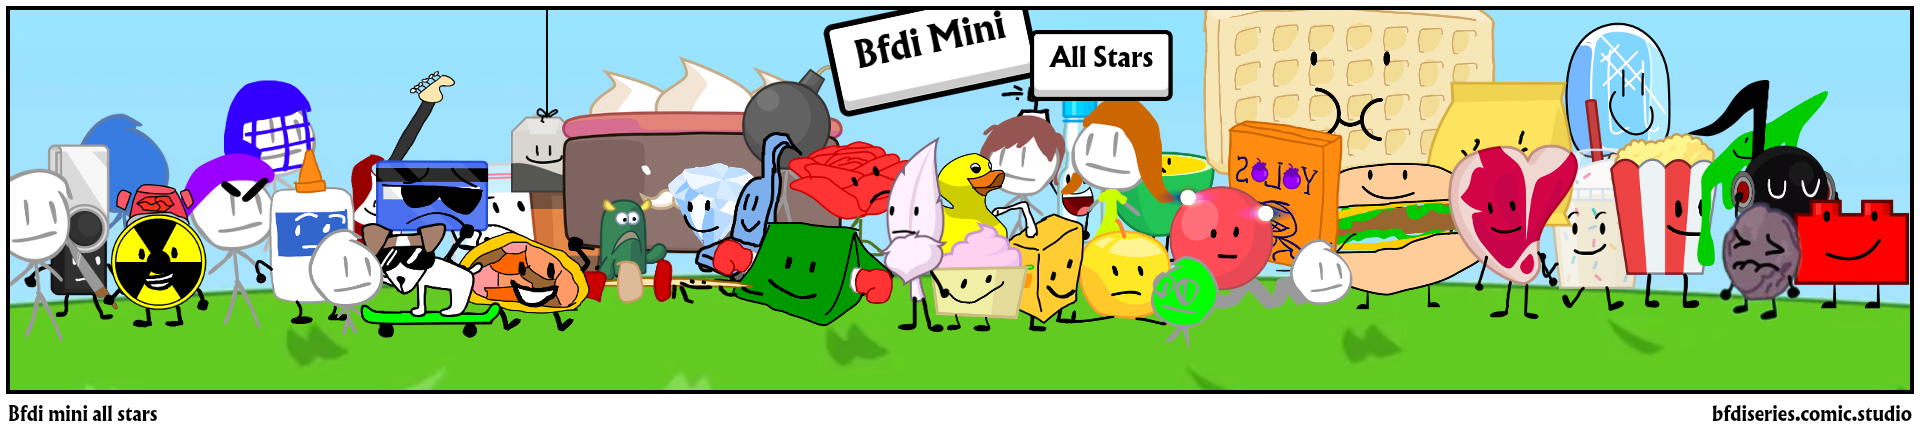 Bfdi mini all stars